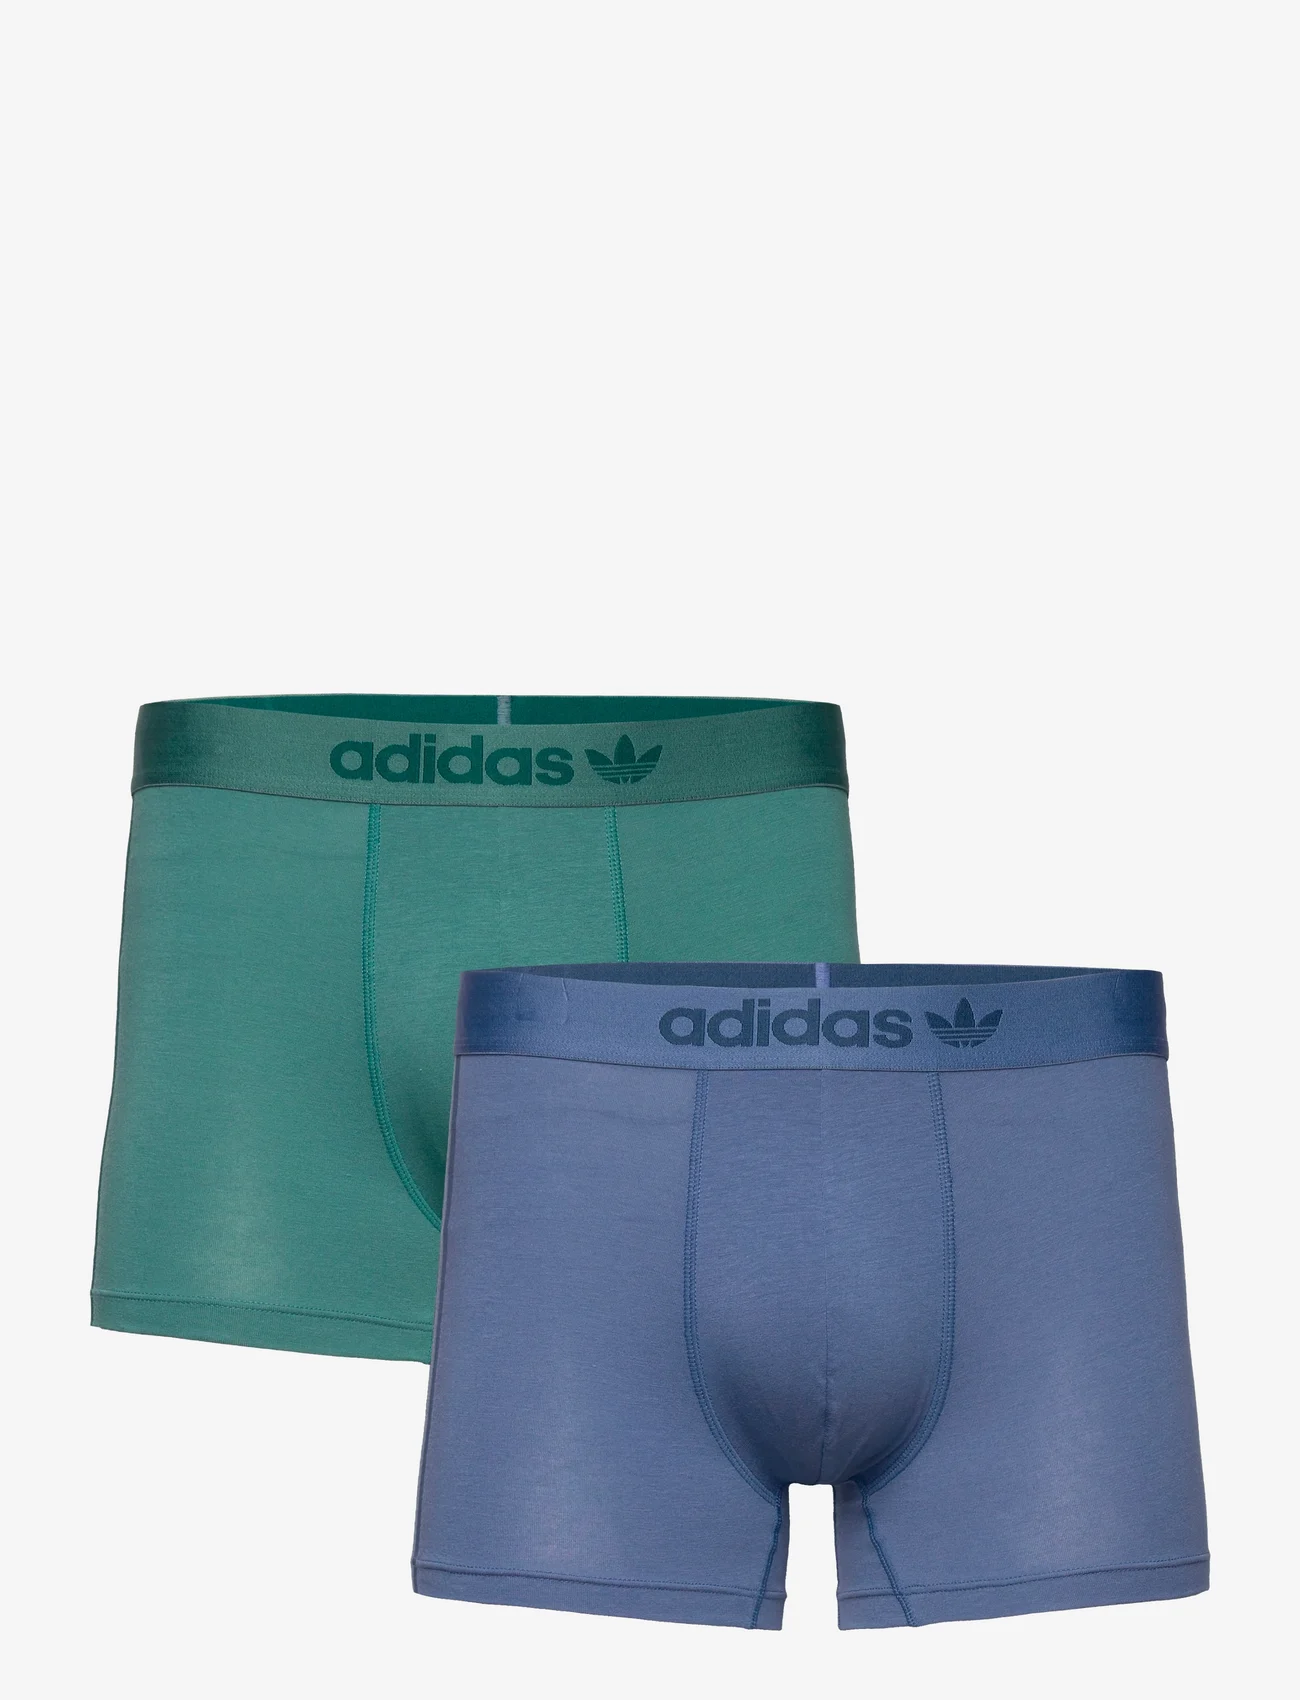 adidas Originals Underwear - Trunks - die niedrigsten preise - assorted 29 - 0